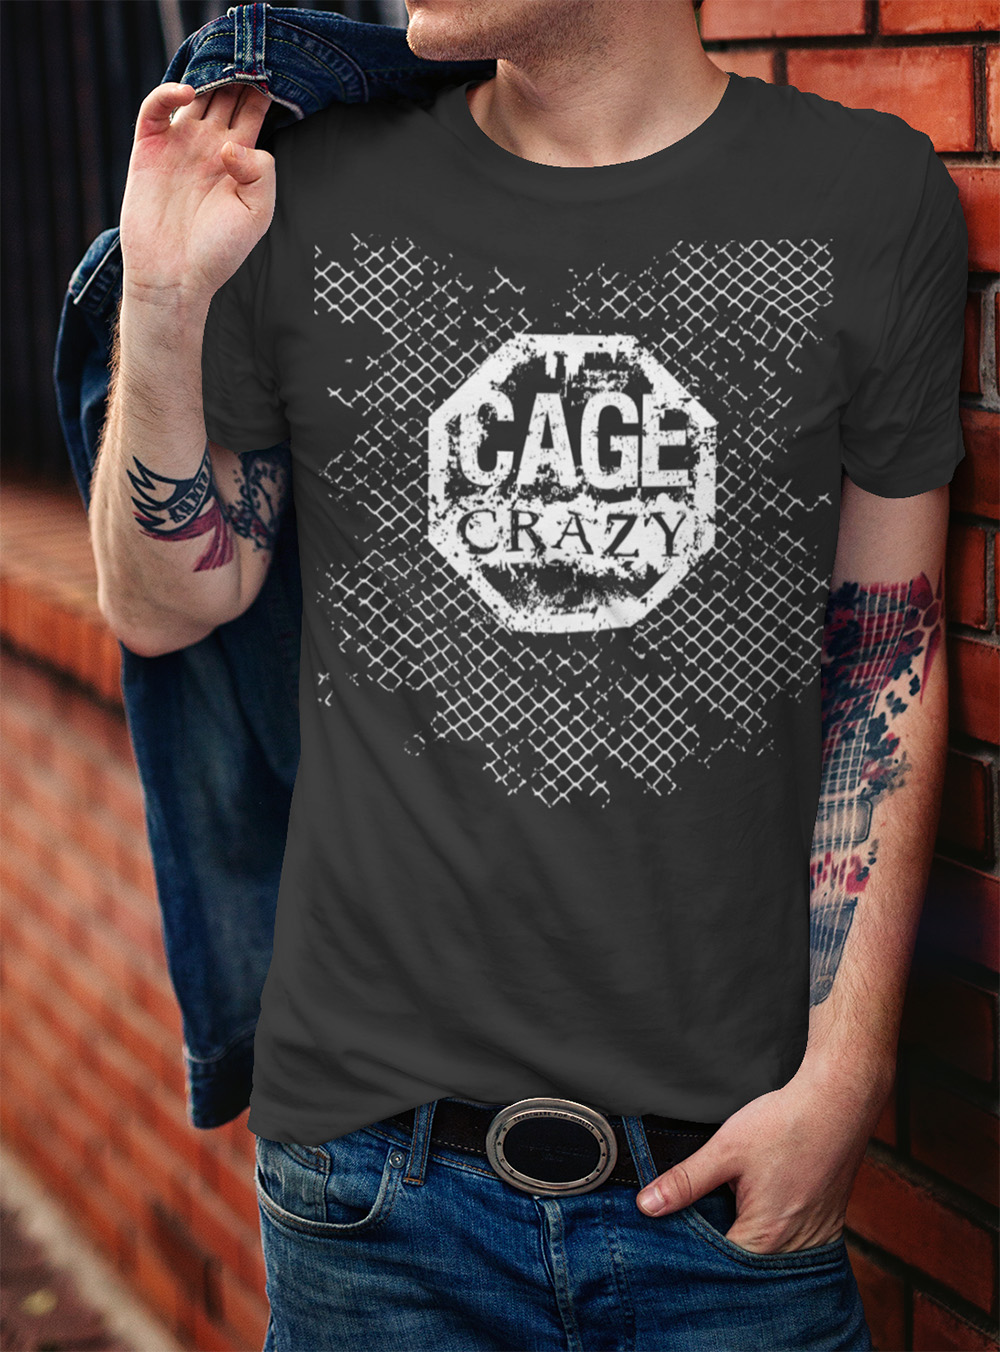 cage crazy t-shirt design